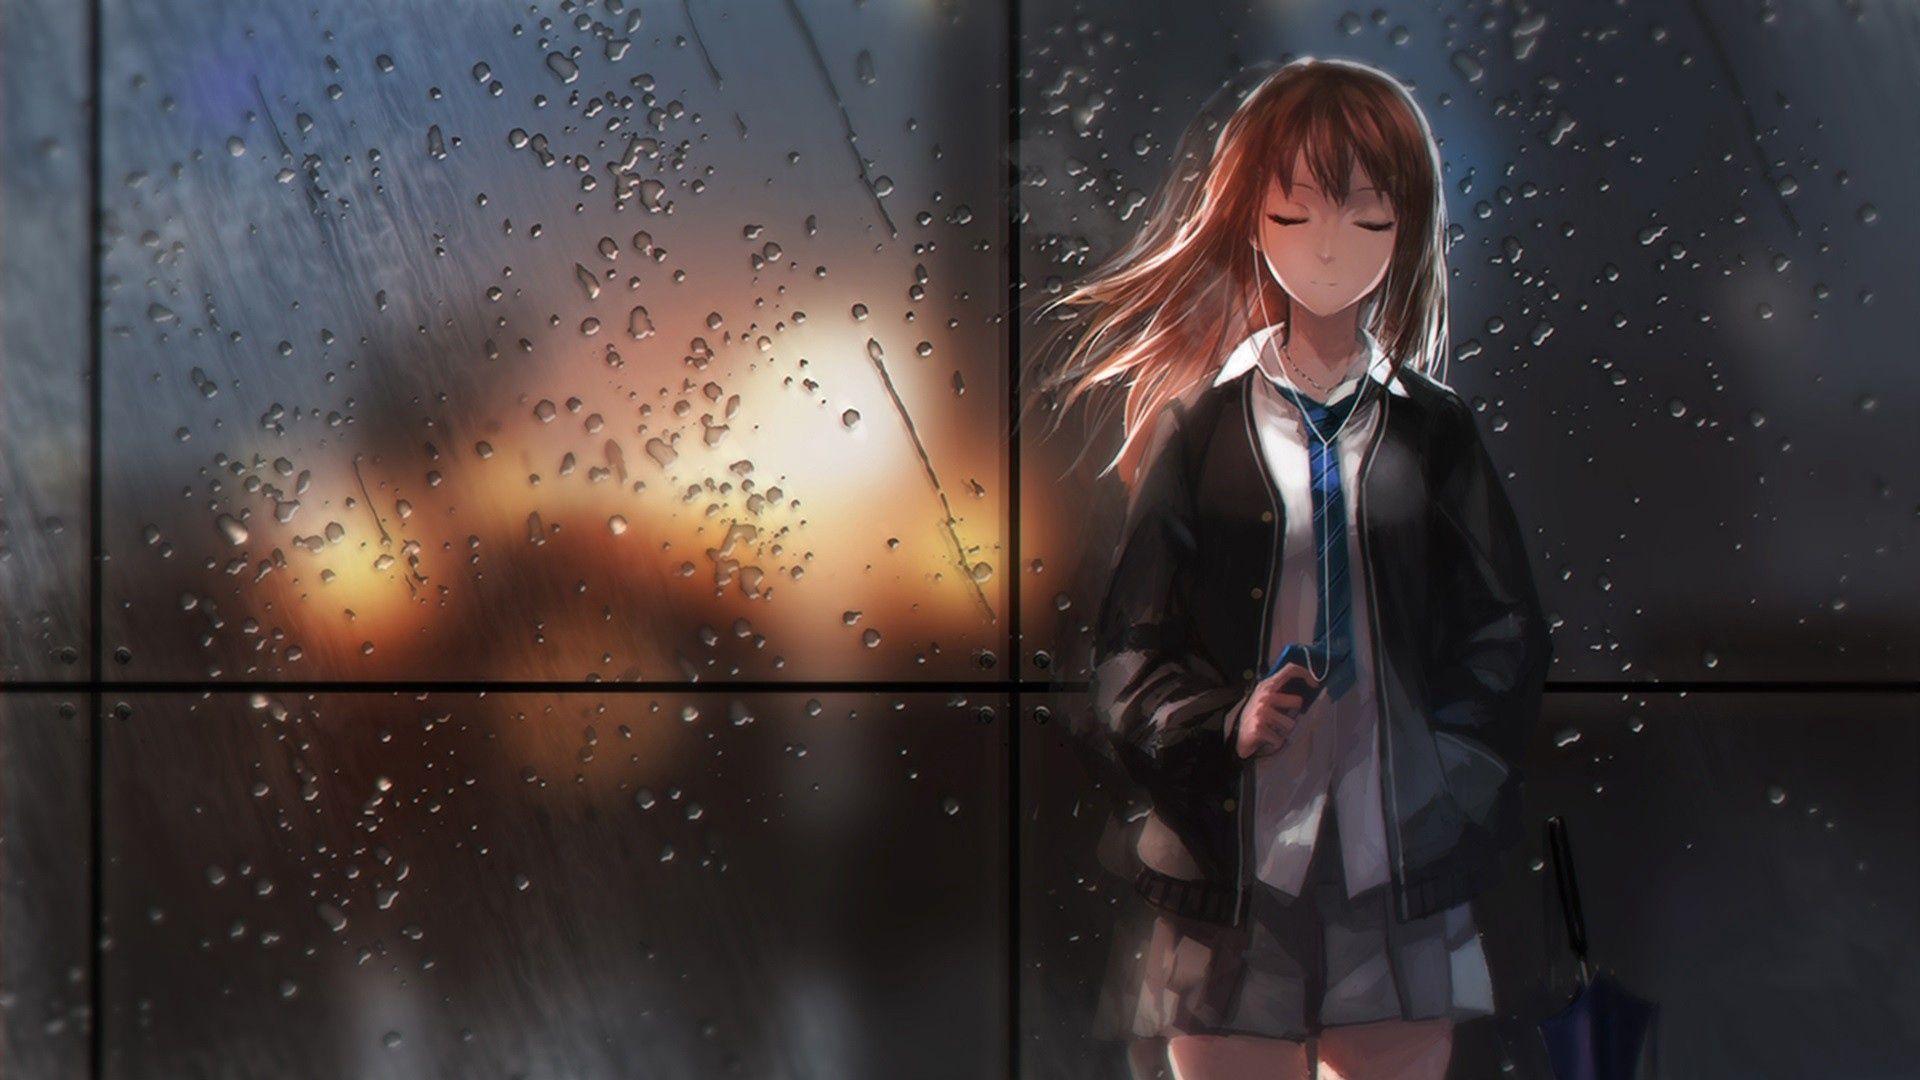 Download wallpaper 1920x1080 girl, anime, rain, glass, light